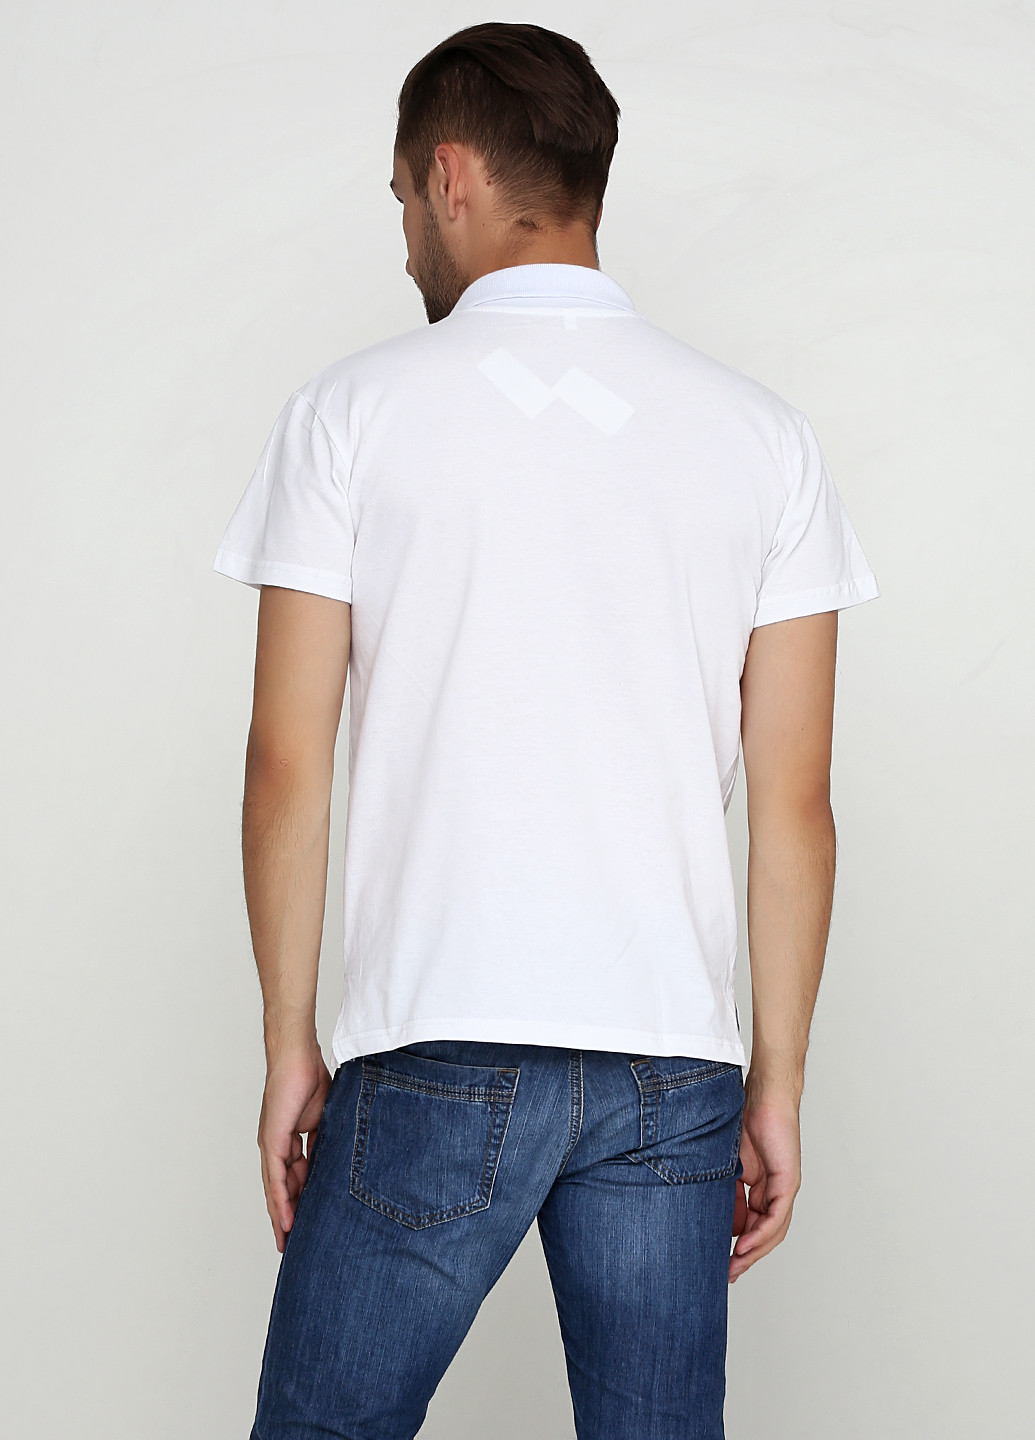 Белая футболка-поло для мужчин Manatki с рисунком